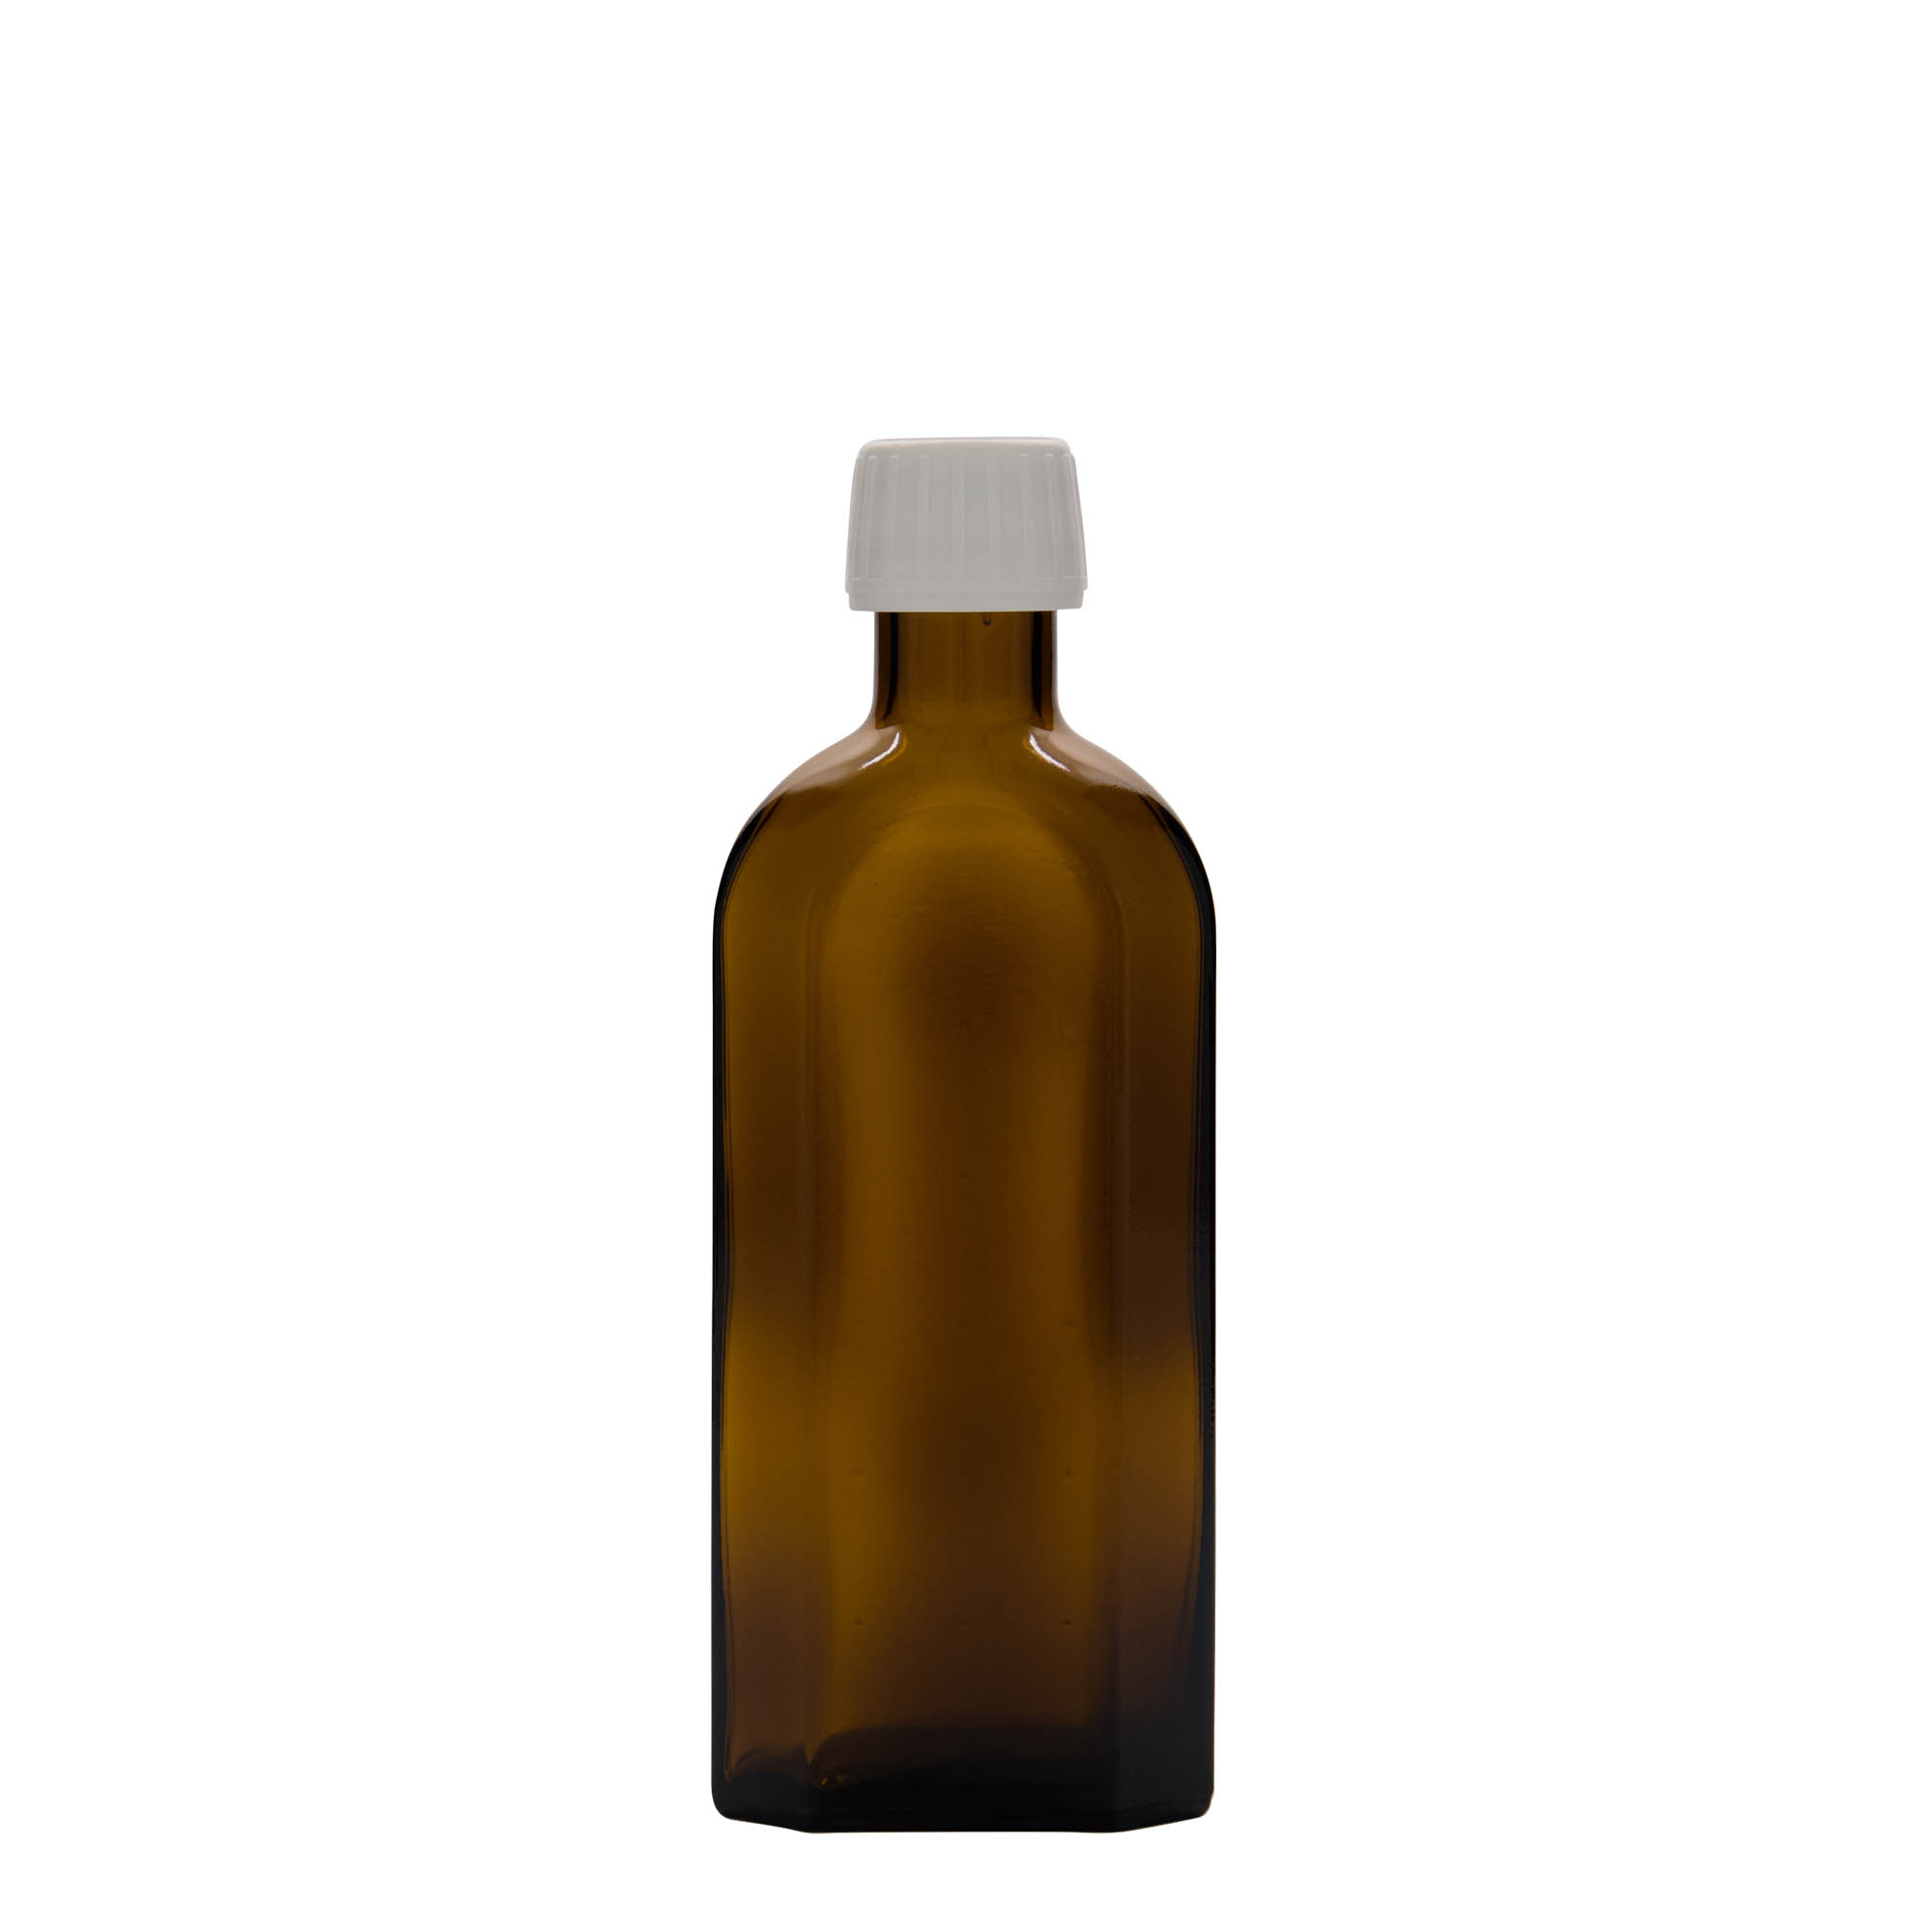 Lékovka Meplat 250 ml, oválná, sklo, hnědá, ústí: PP 28